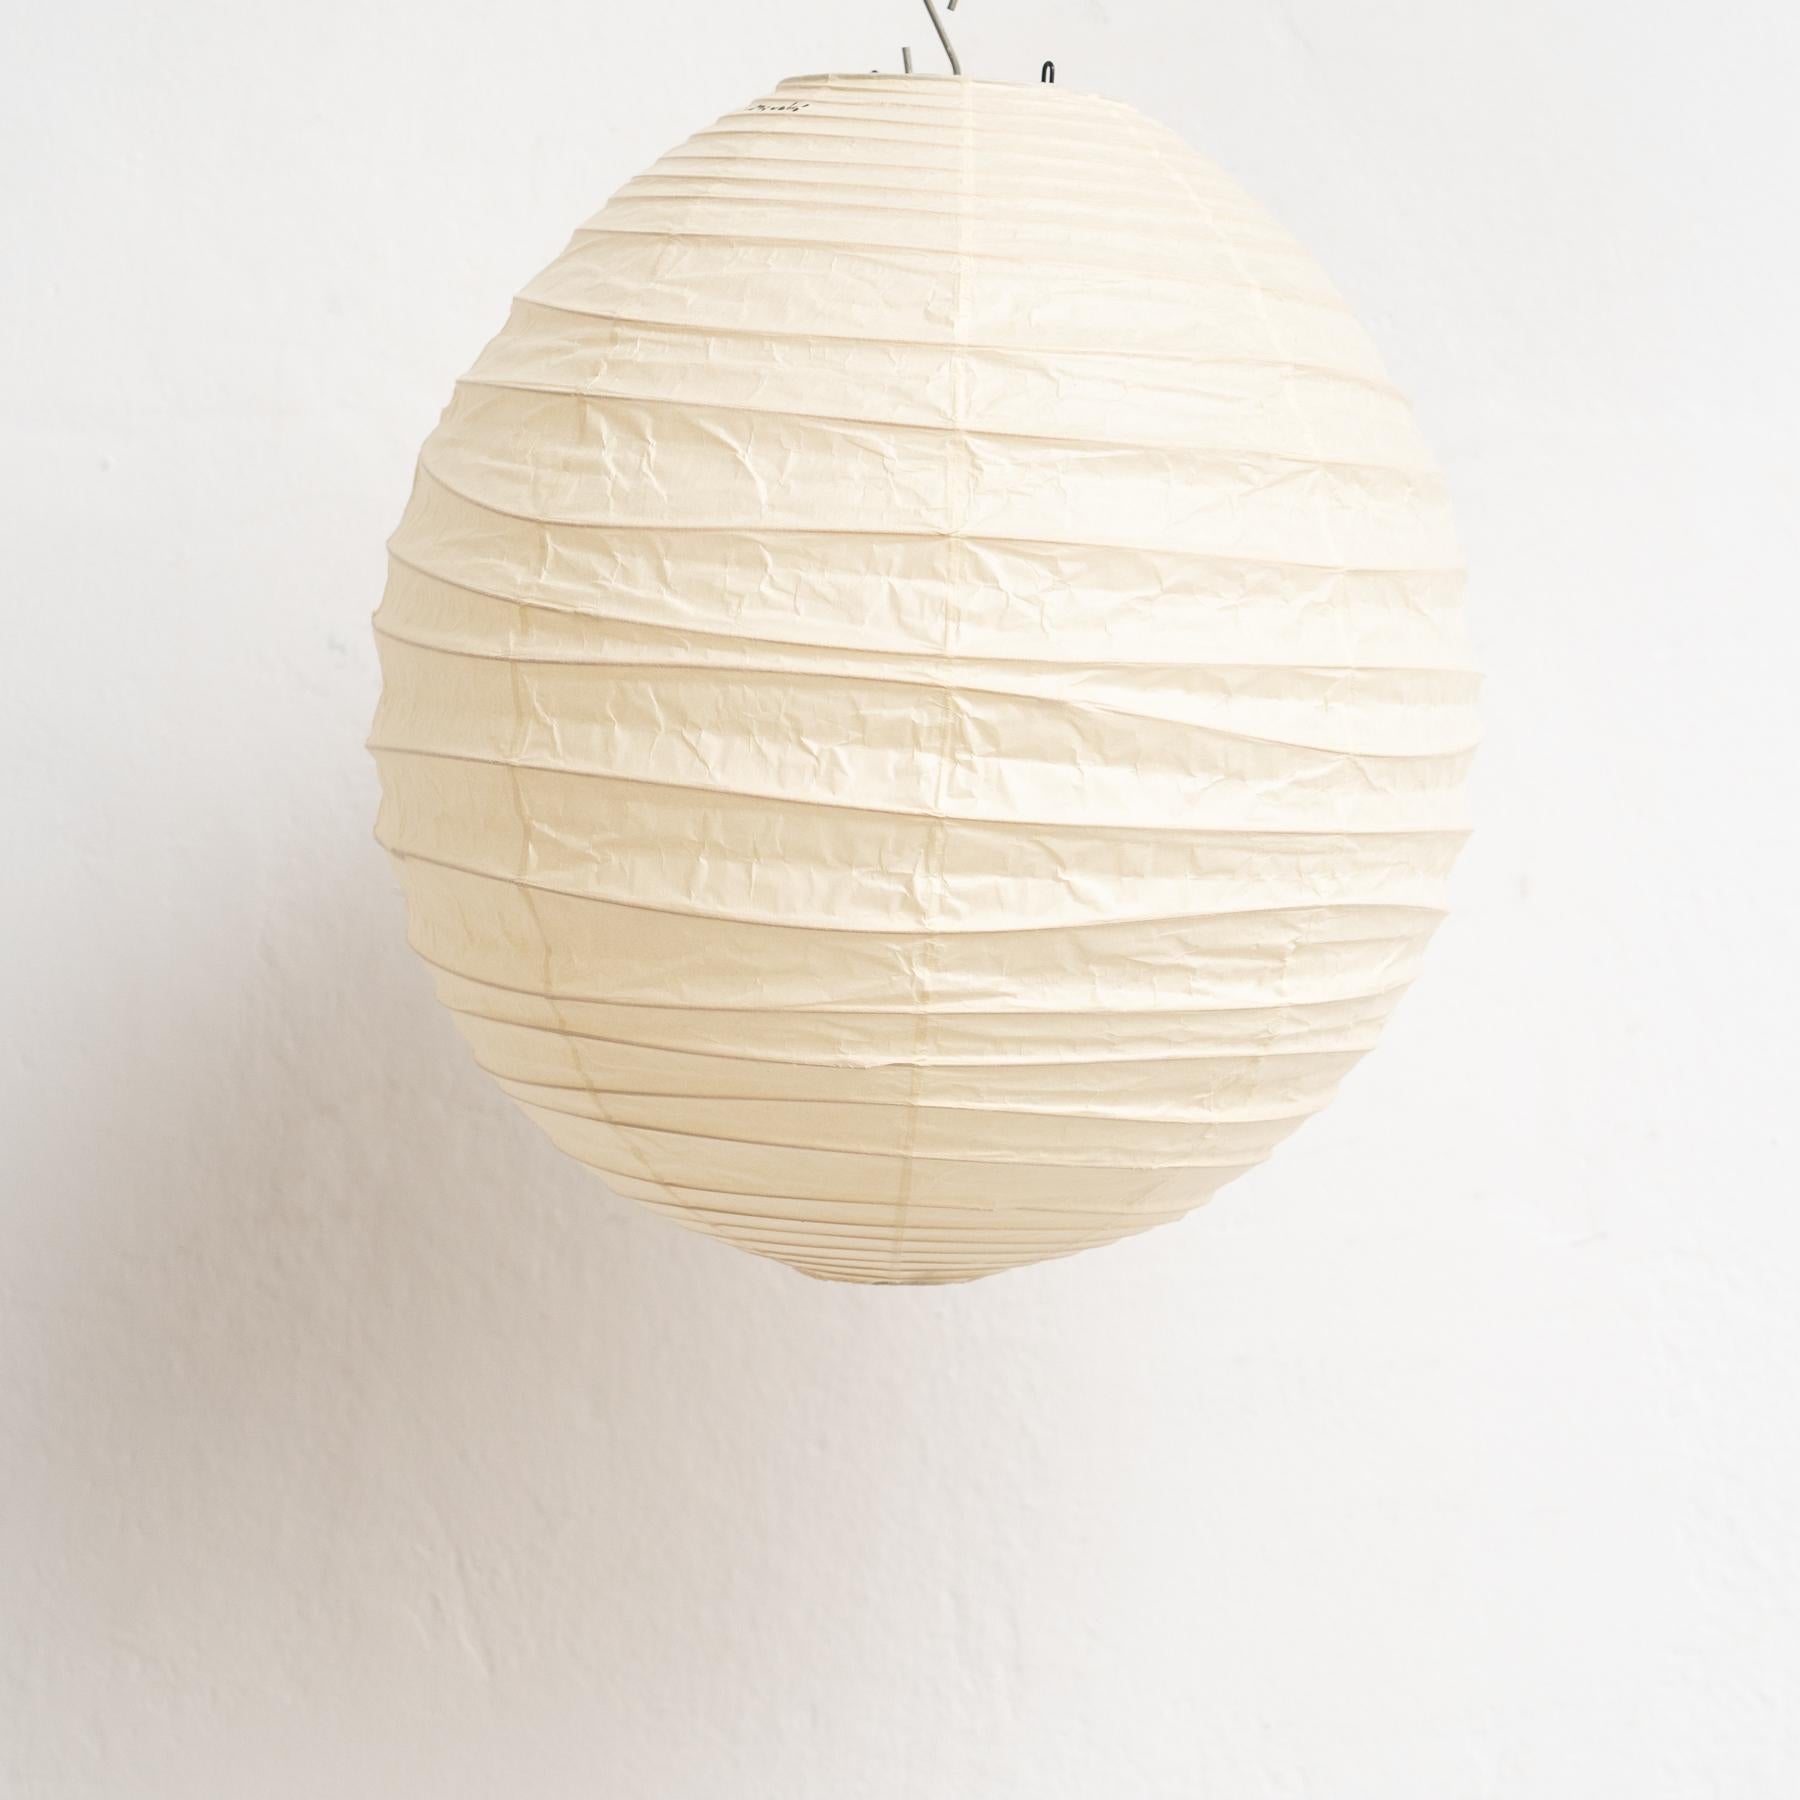 Introduisez un mélange exquis de tradition et de design contemporain dans votre espace avec la lampe à suspension Isamu Noguchi modèle 40DL. Méticuleusement conçue par le sculpteur emblématique Isamu Noguchi et fabriquée de manière experte par Ozeki